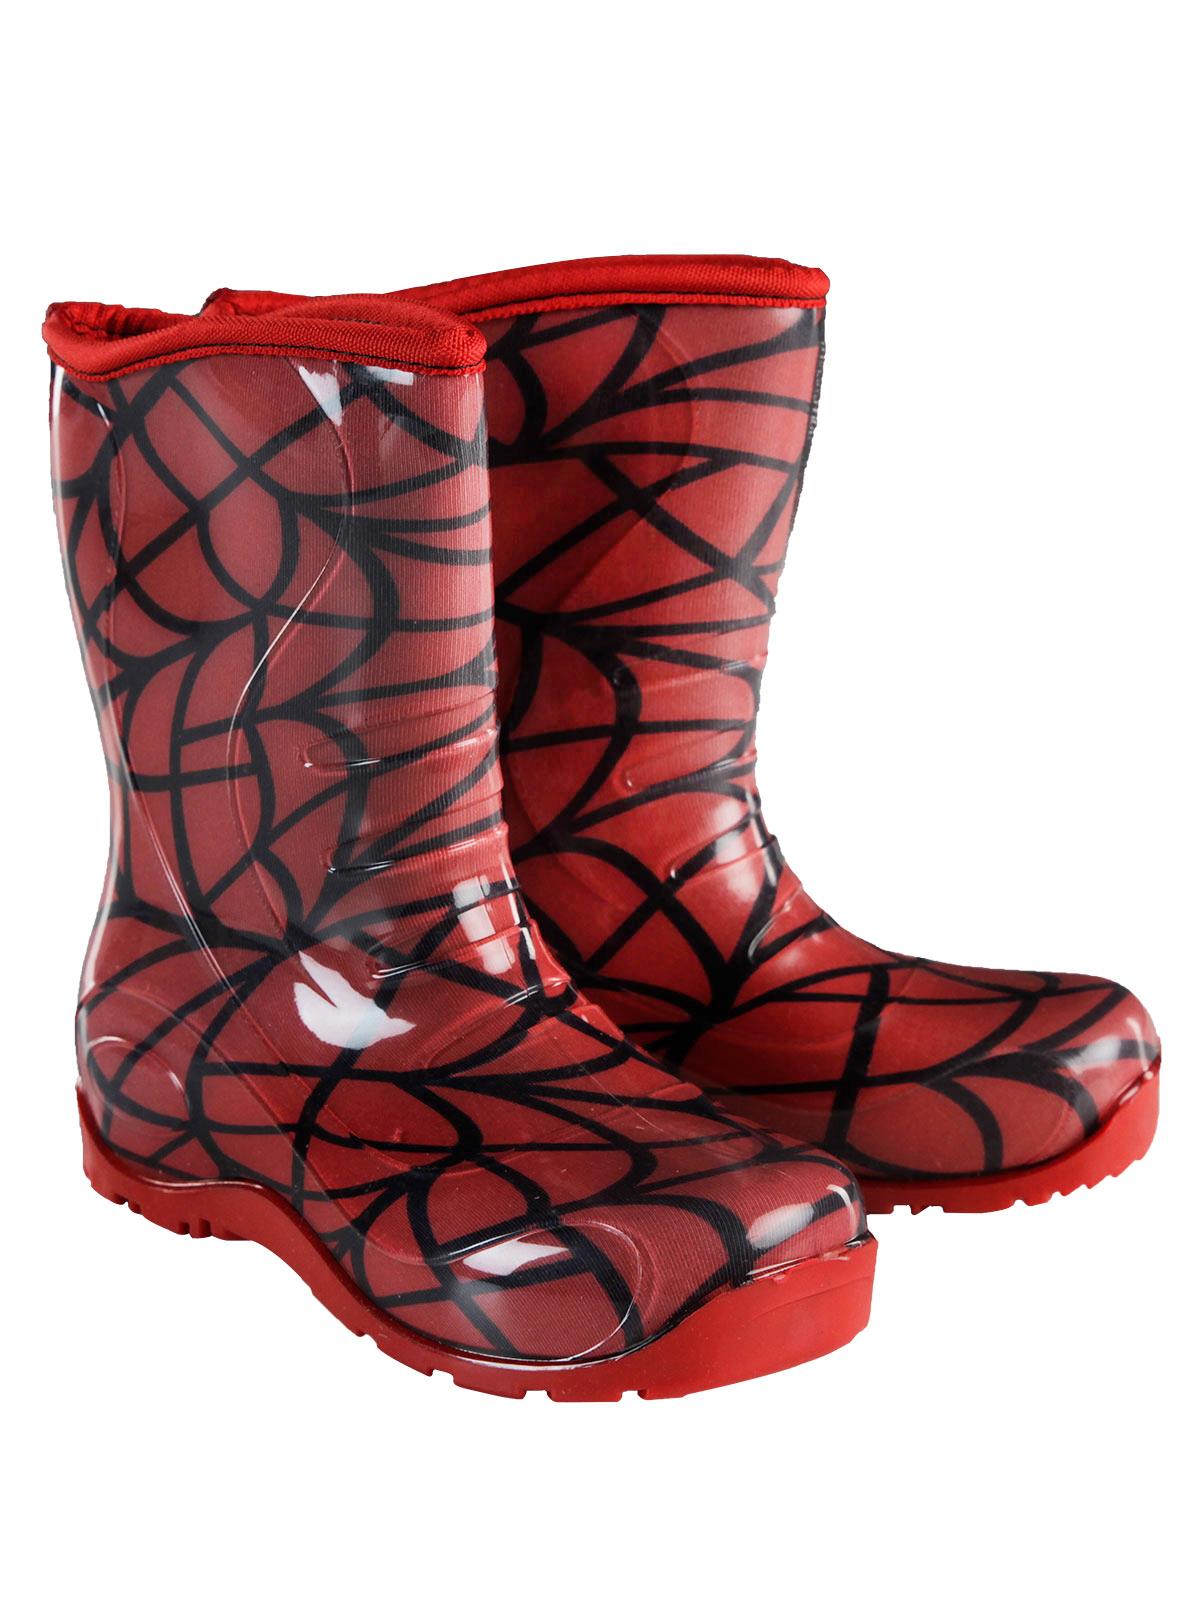 Boots Erkek Çocuk Ağ Desenli Yağmur Çizmesi 30-34 Numara Kırmızı